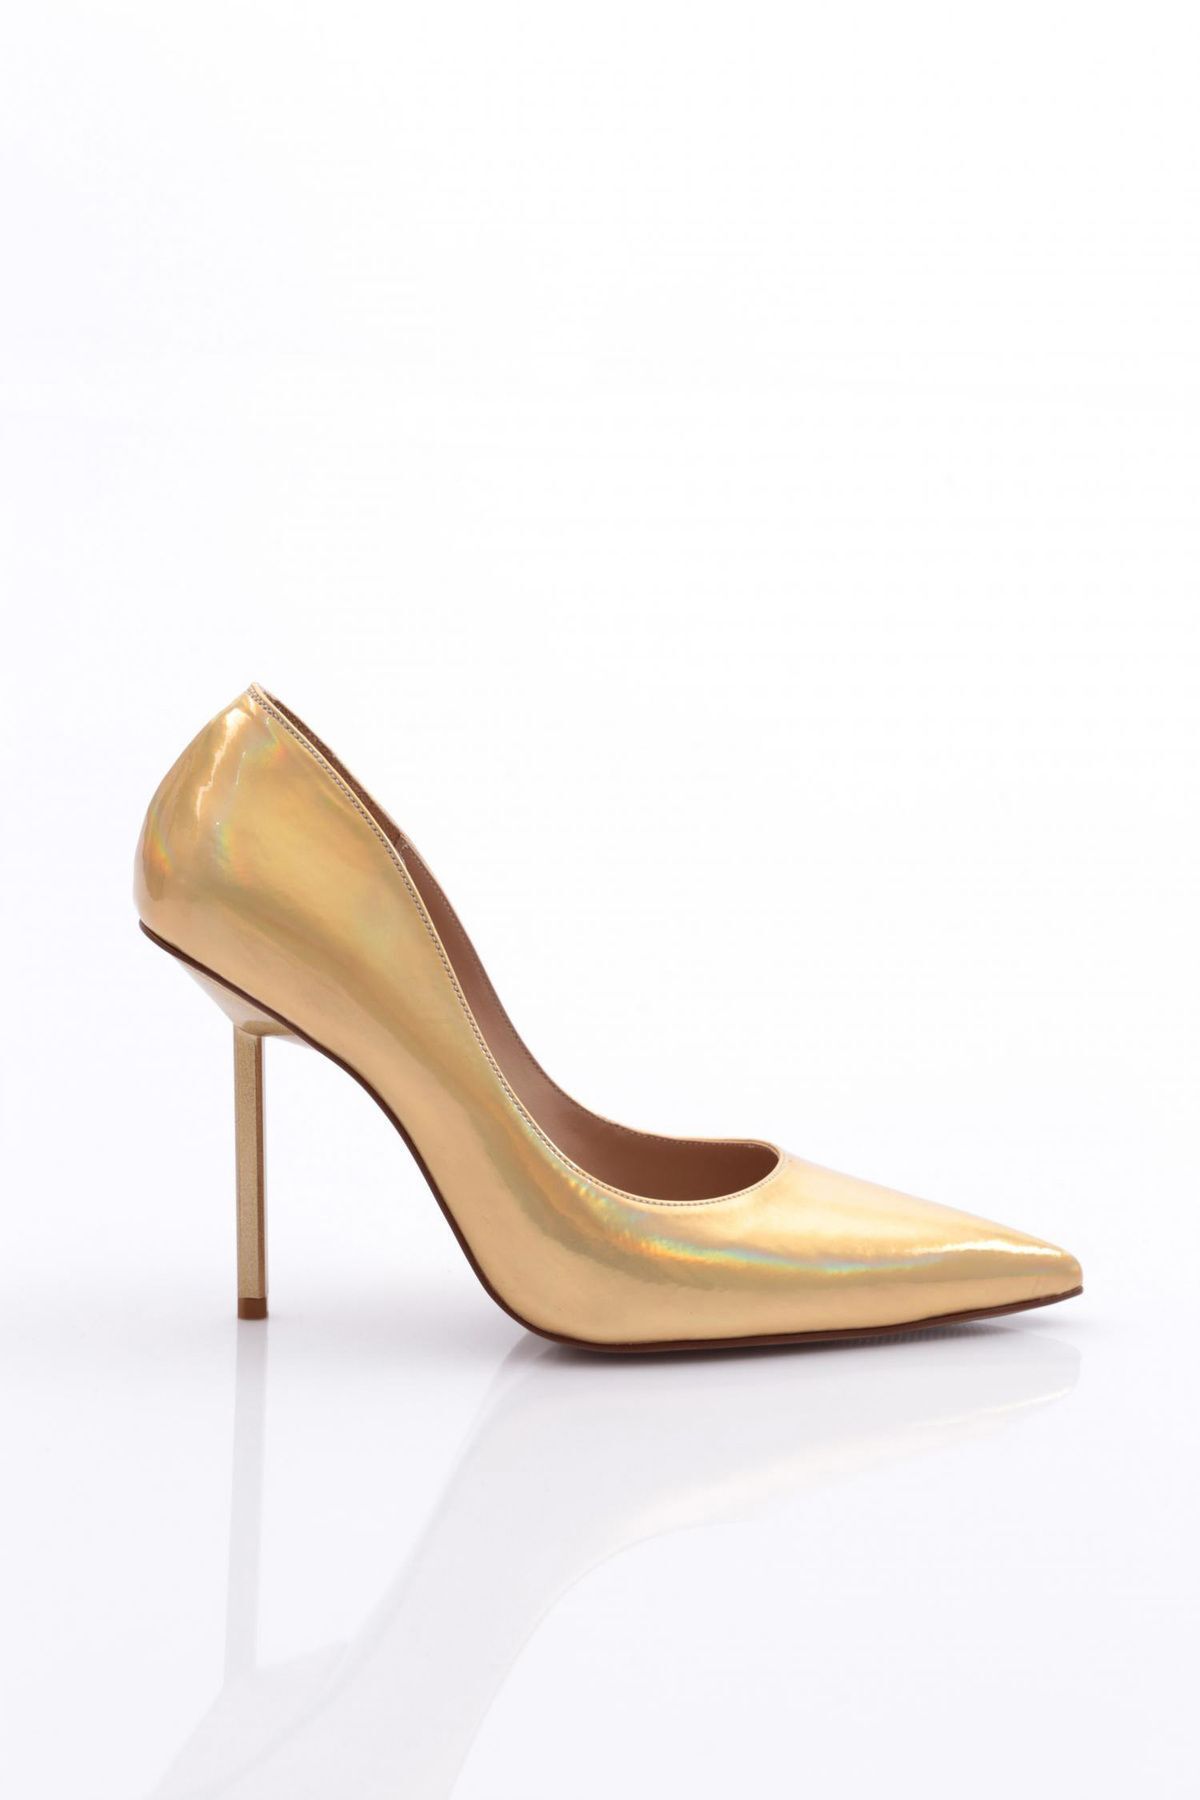 Dgn 4550 Kadın Topuklu Ayakkabı Altın Metalik